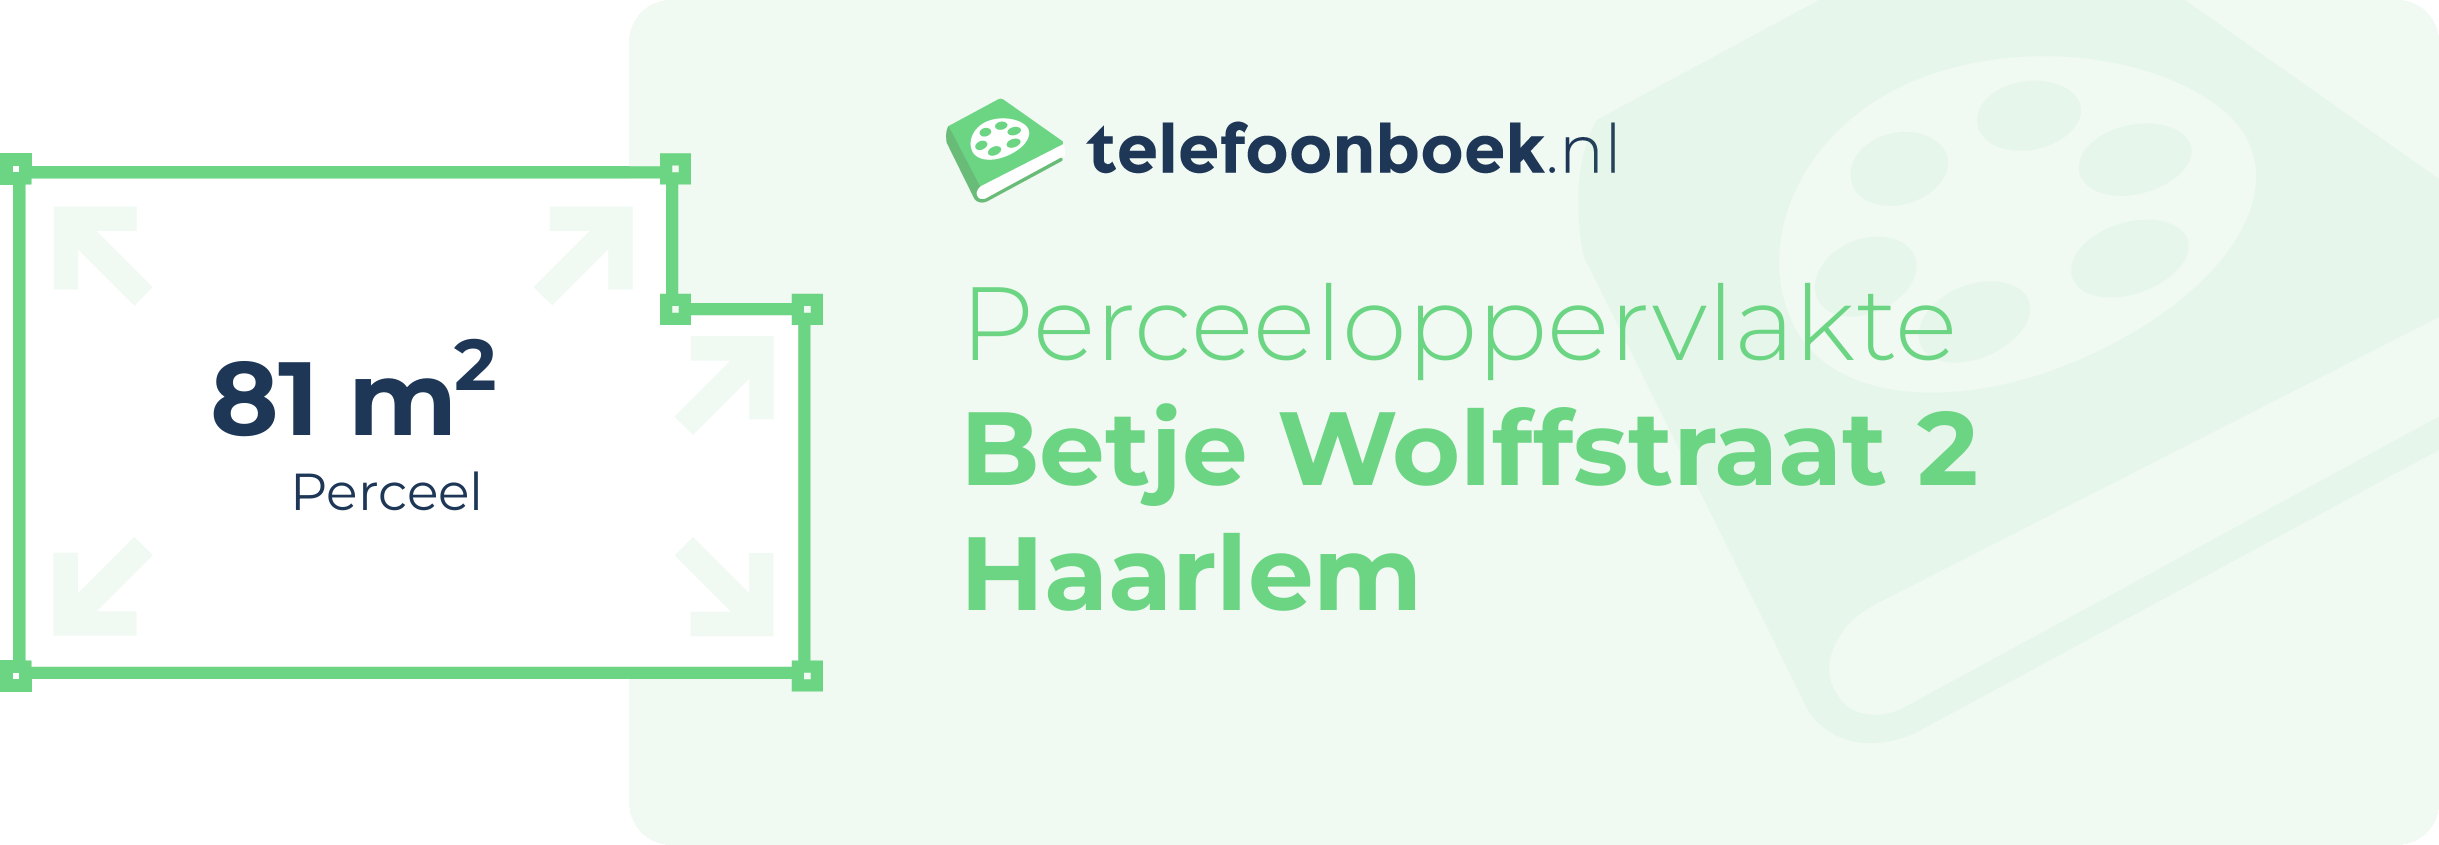 Perceeloppervlakte Betje Wolffstraat 2 Haarlem